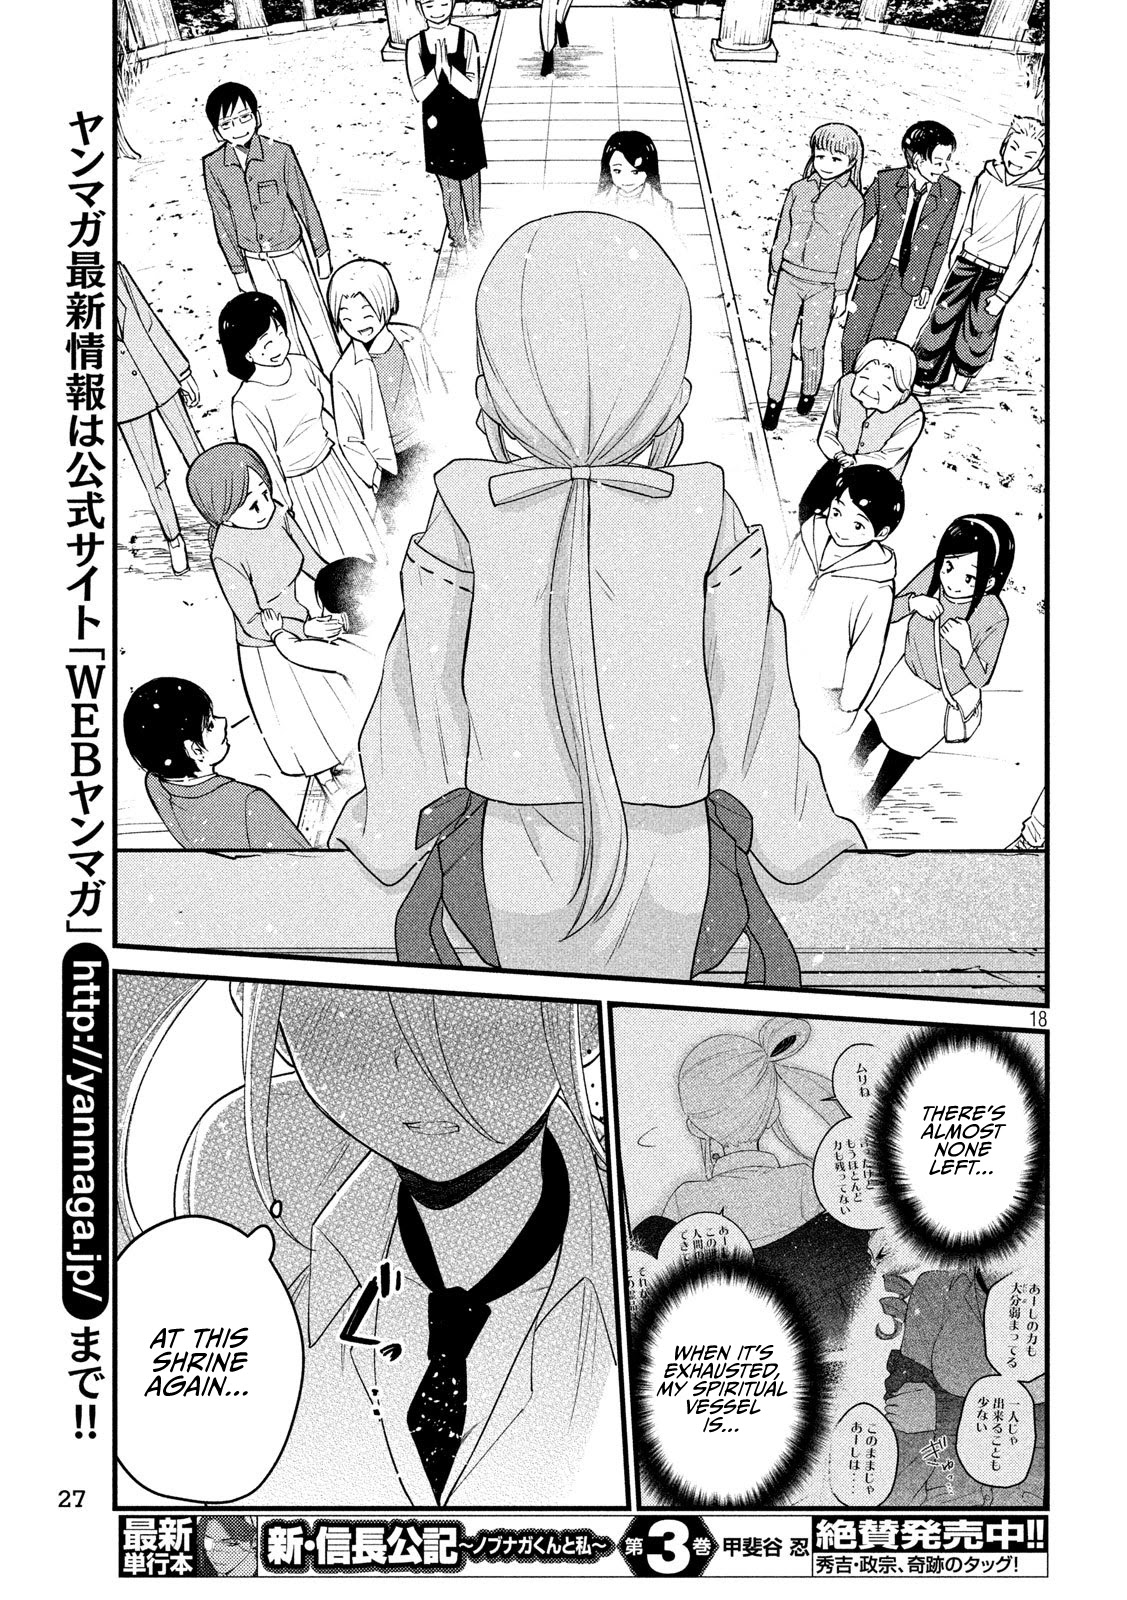 Otaku No Tonari Wa Erufu Desuka? - 12 page 18